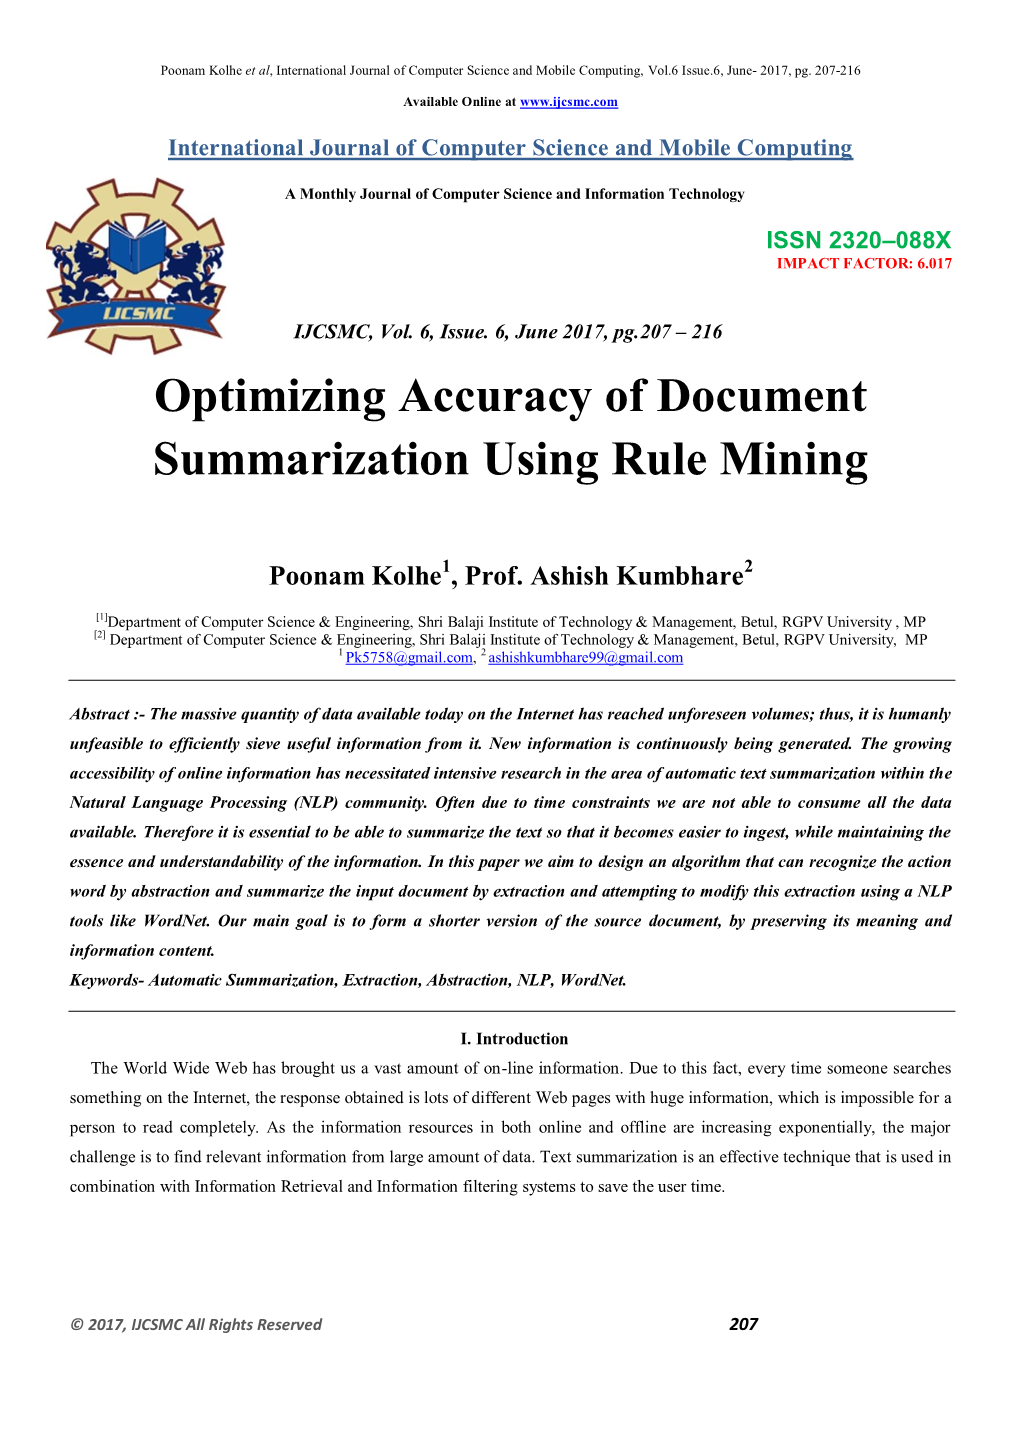 Optimizing Accuracy of Document Summarization Using Rule Mining